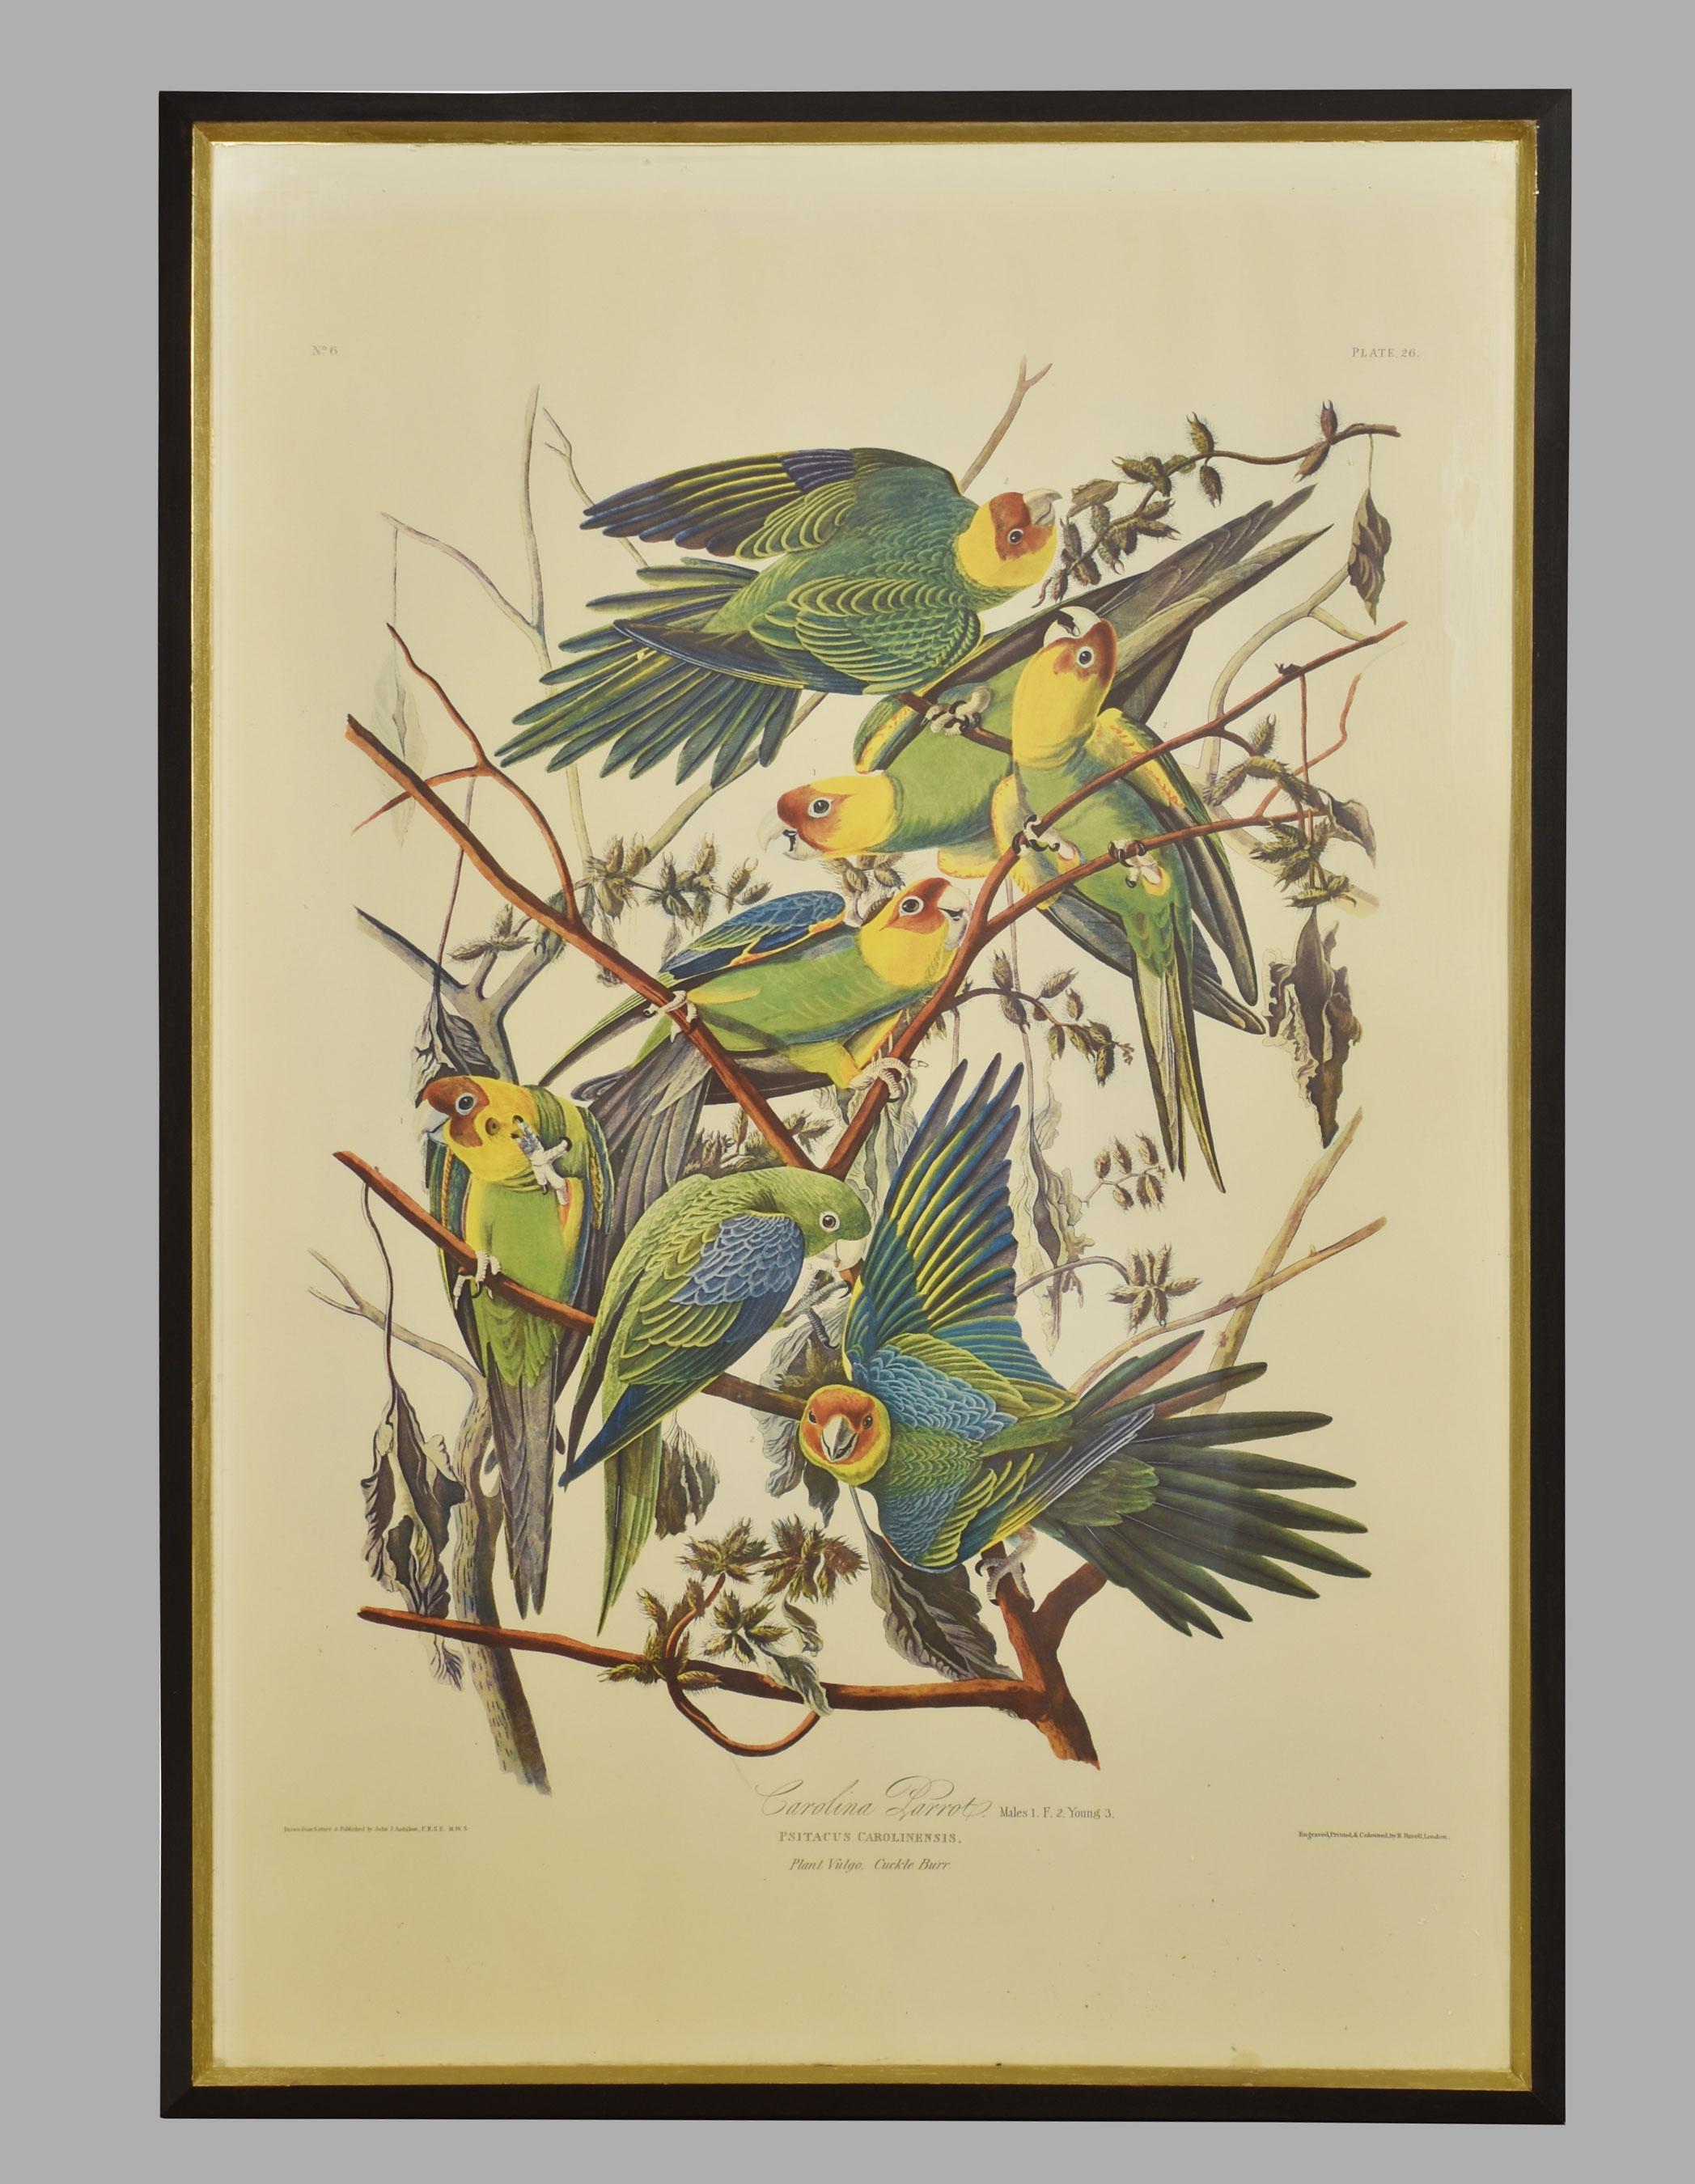 Nach John J. Audubon, zwei große ornithologische Studien, bestehend aus einem Carolina-Papagei und einem Rotschulterbussard, die in Ebenholzrahmen gefasst sind.
Abmessungen
Höhe 41,5 Zoll
Breite 28 Zoll
Tiefe 1 Zoll.